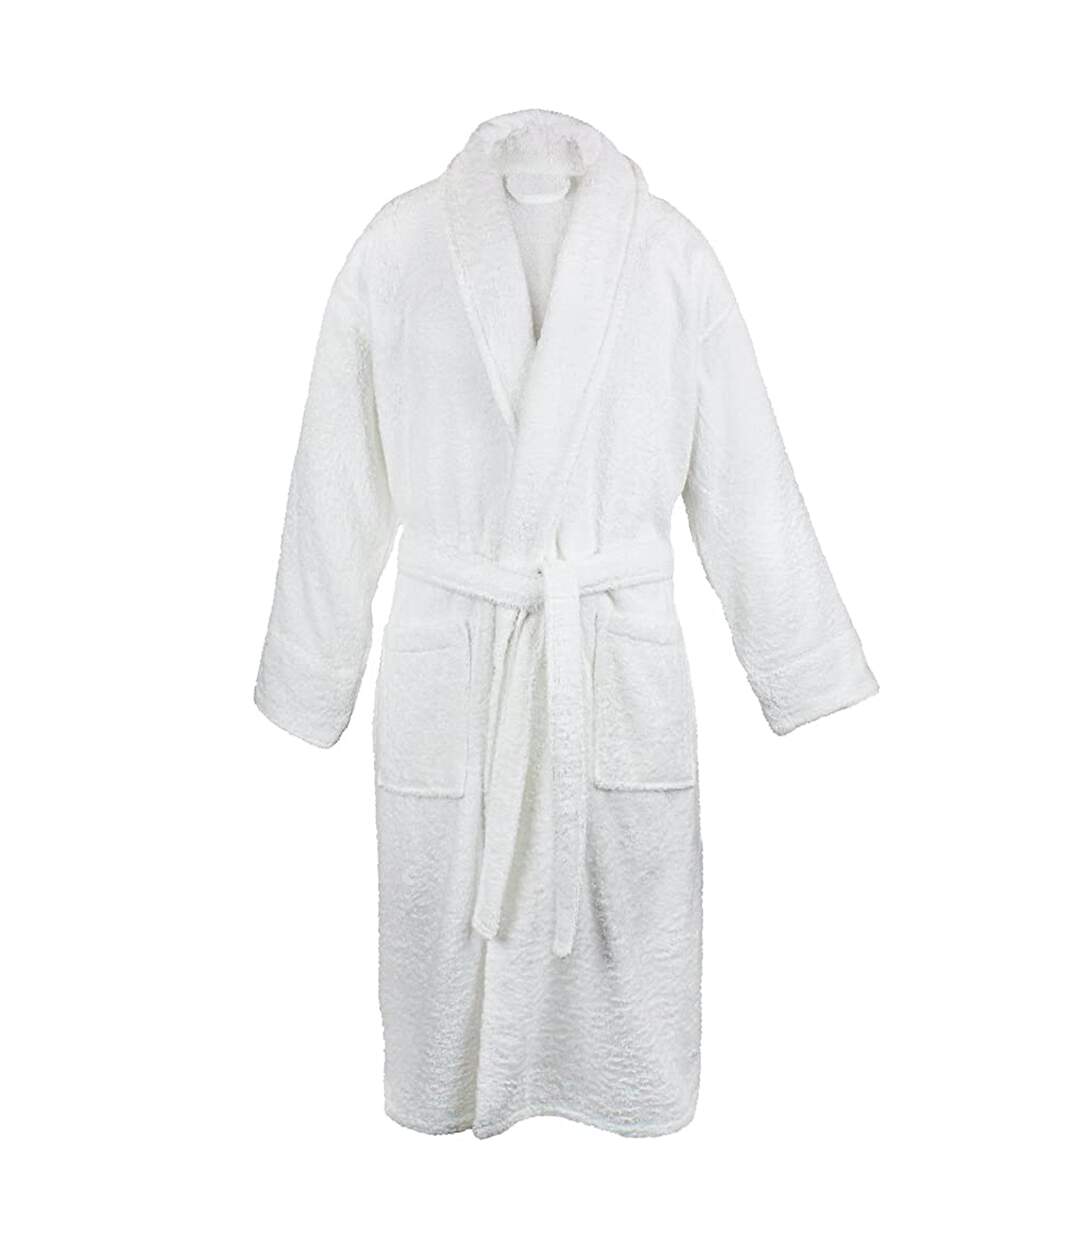 A&R Towels - Robe de chambre - Adulte (Blanc) - UTRW6532